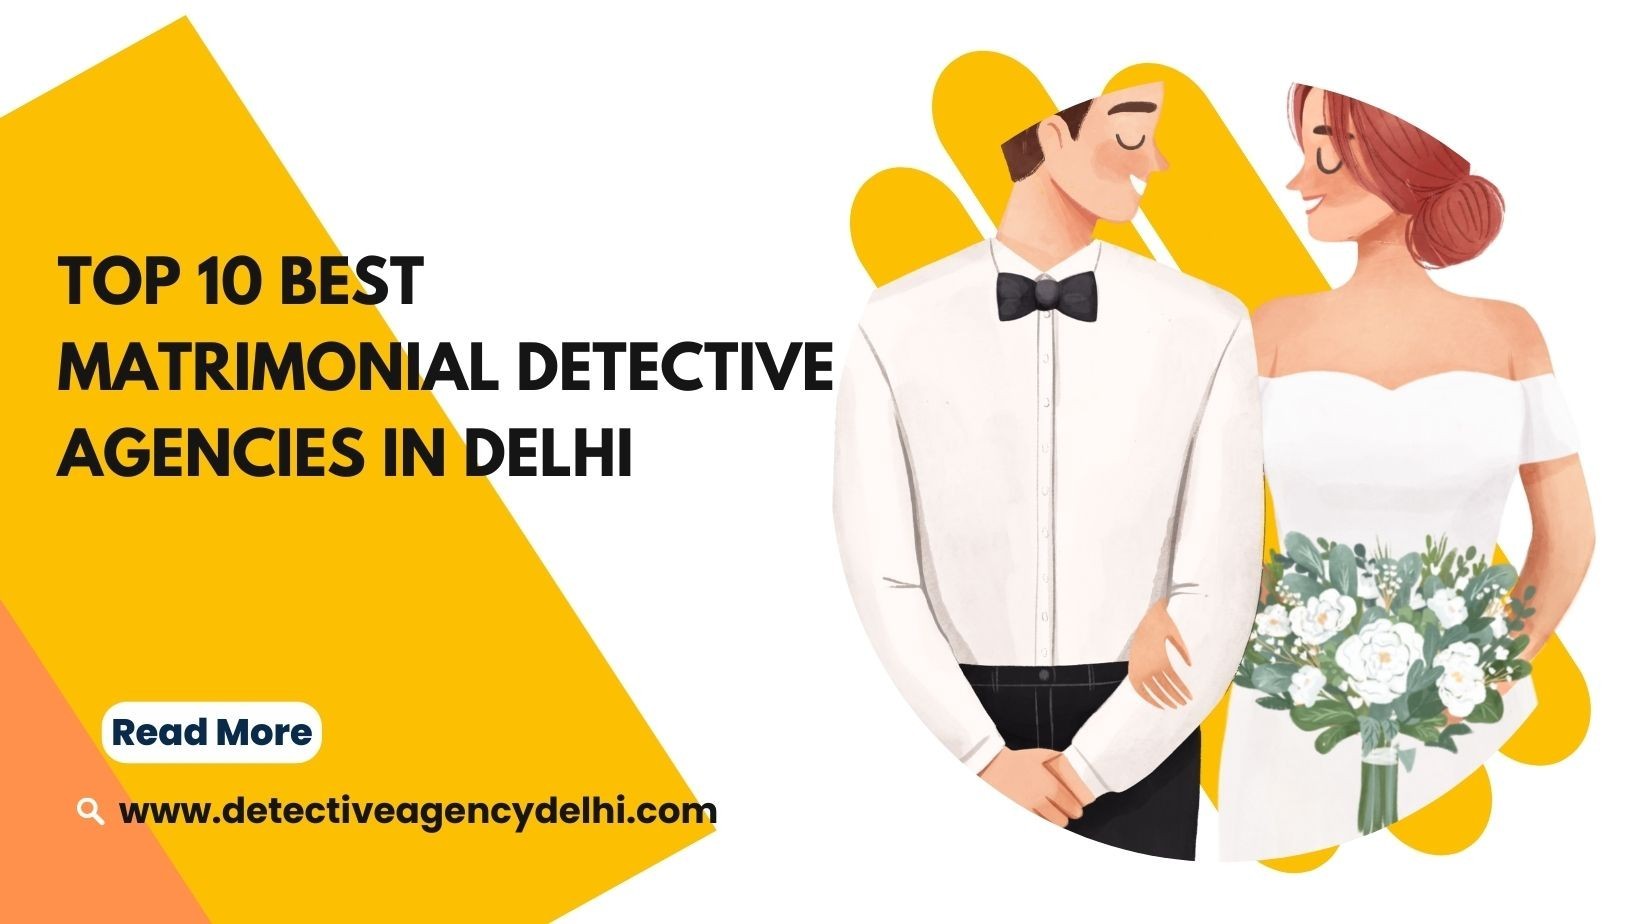 Top 10 Best Matrimonial Detective Agencies in Delhi